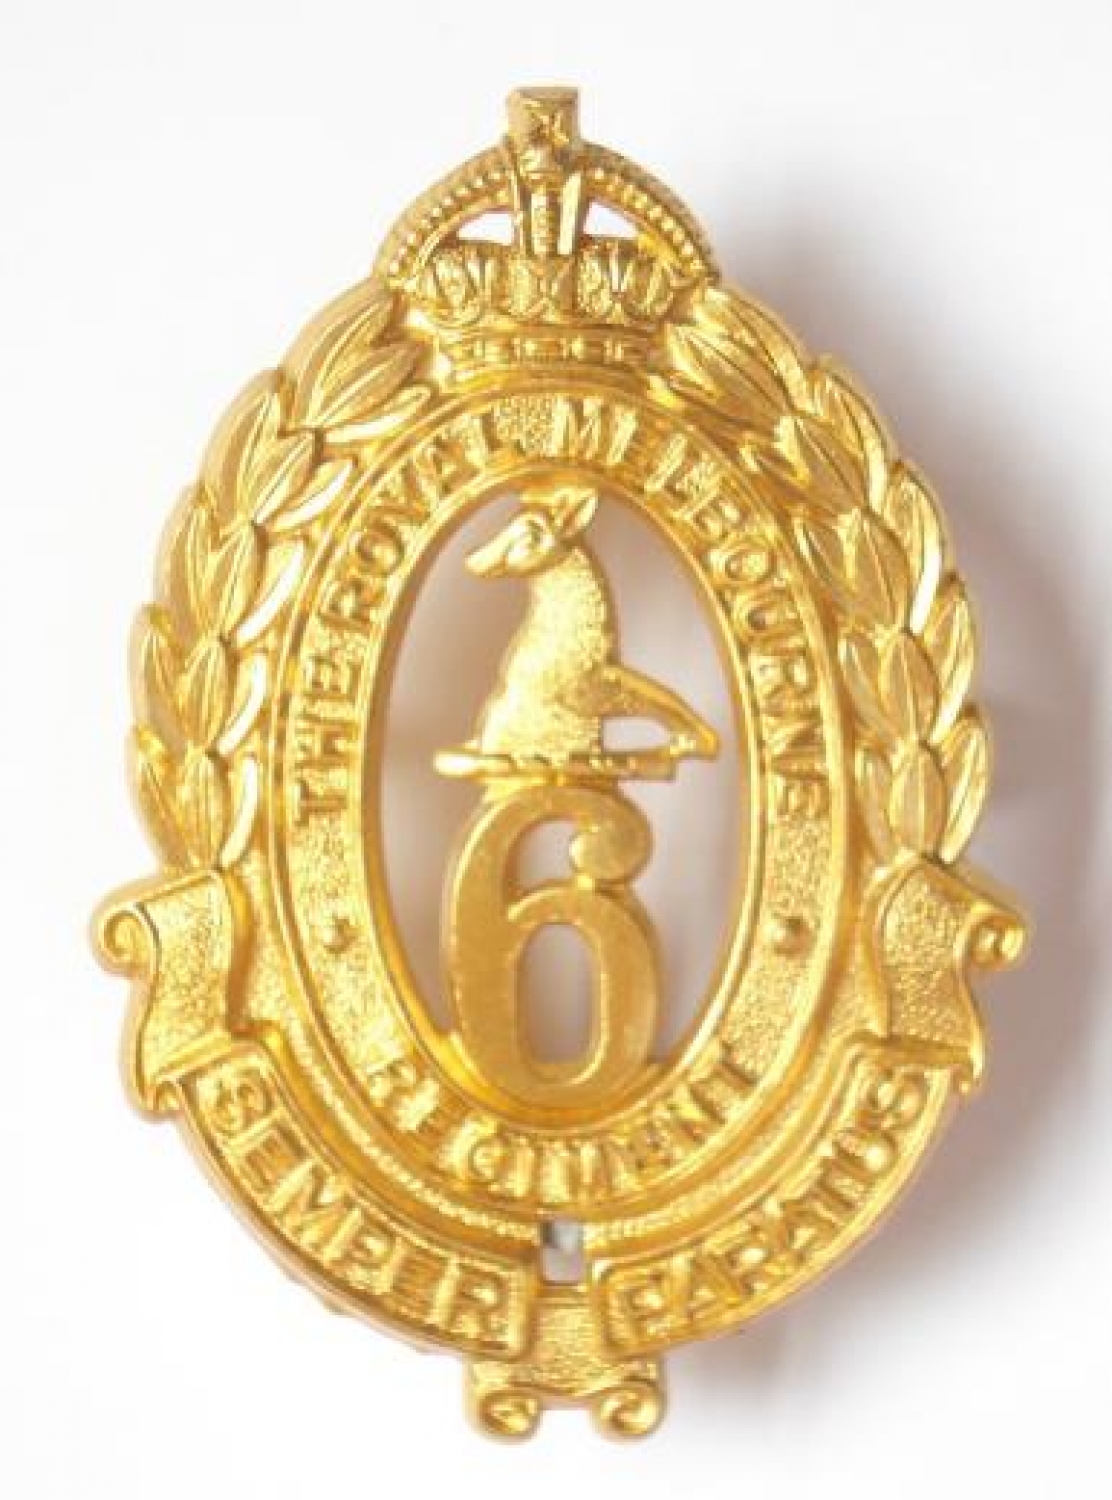 6th Australian Infantry Bn slouch hat badge